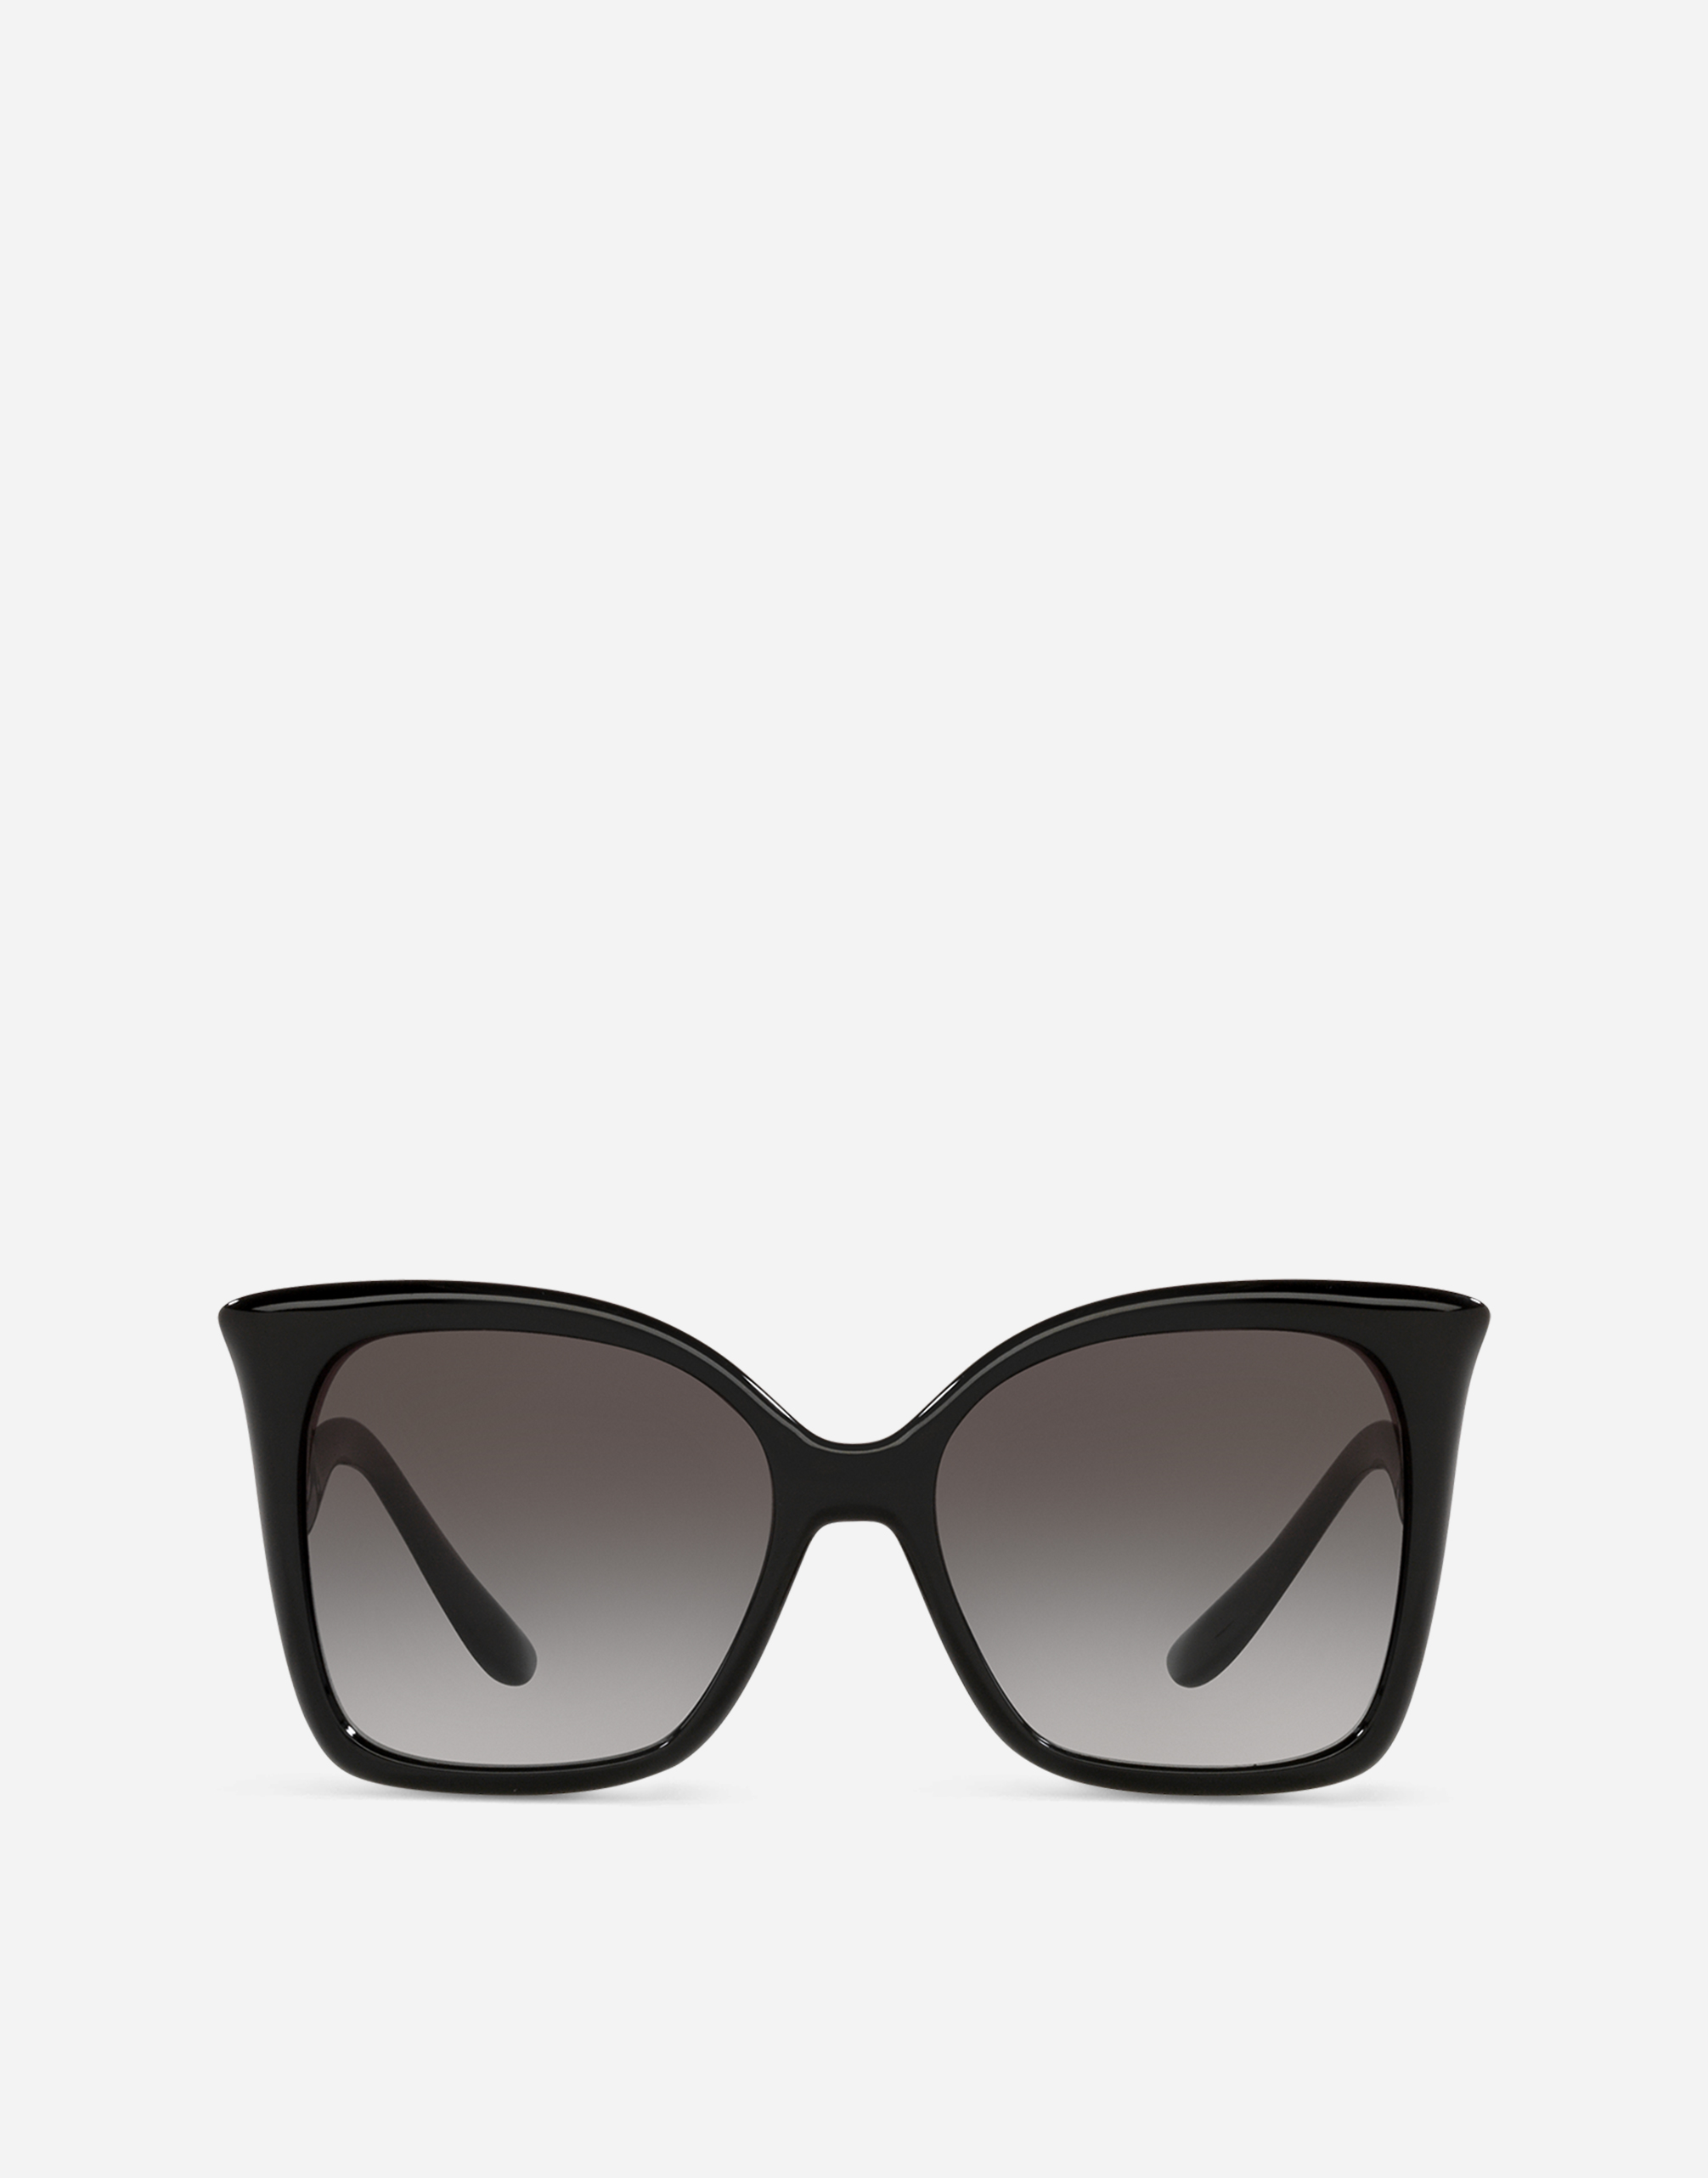 Gattopardo Sunglasses in Black